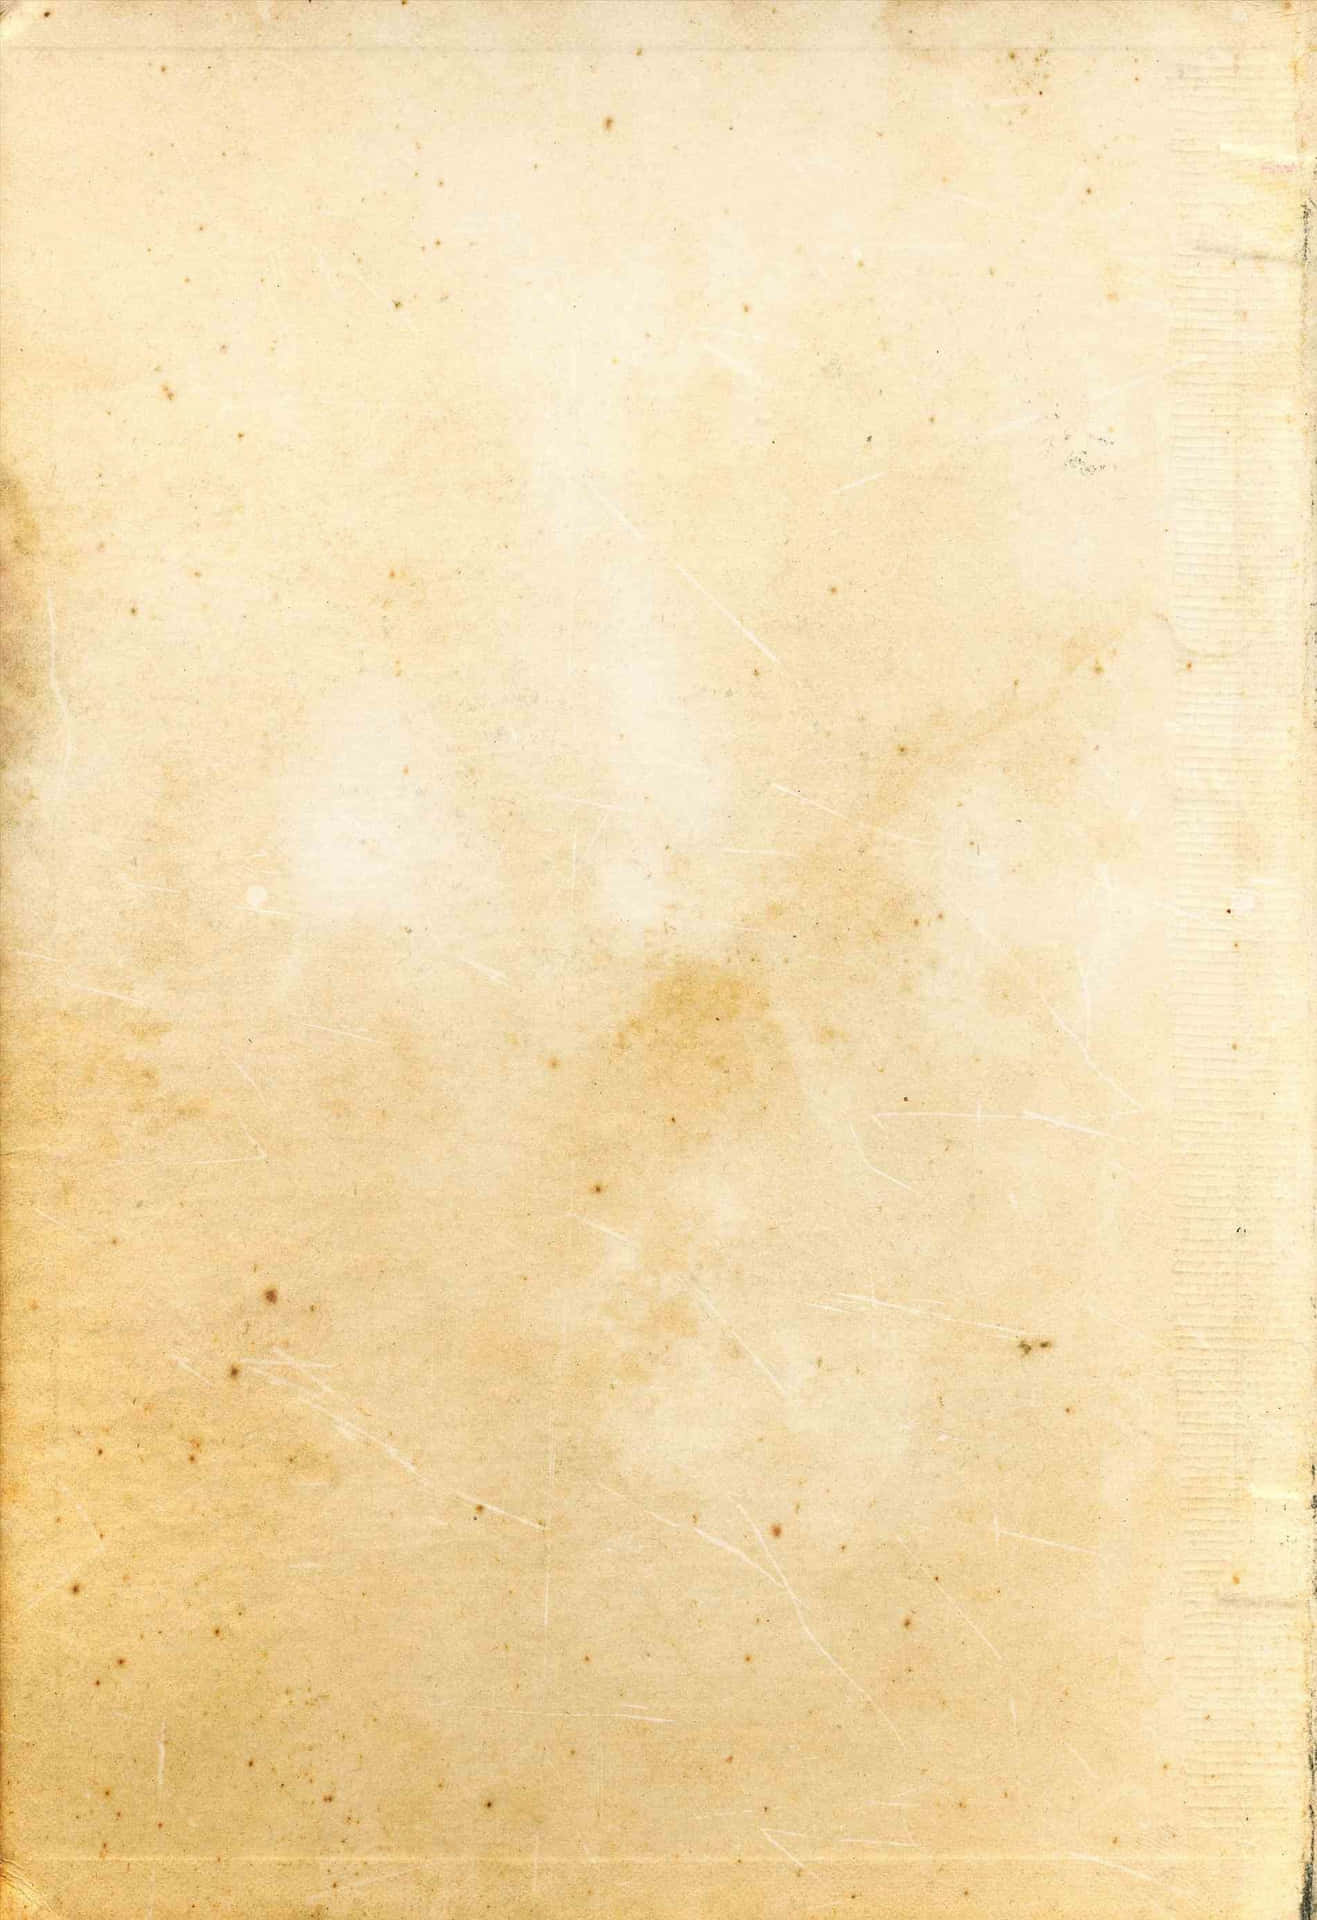 Texturade Papel Antiguo Blanco Y Marrón En Retrato